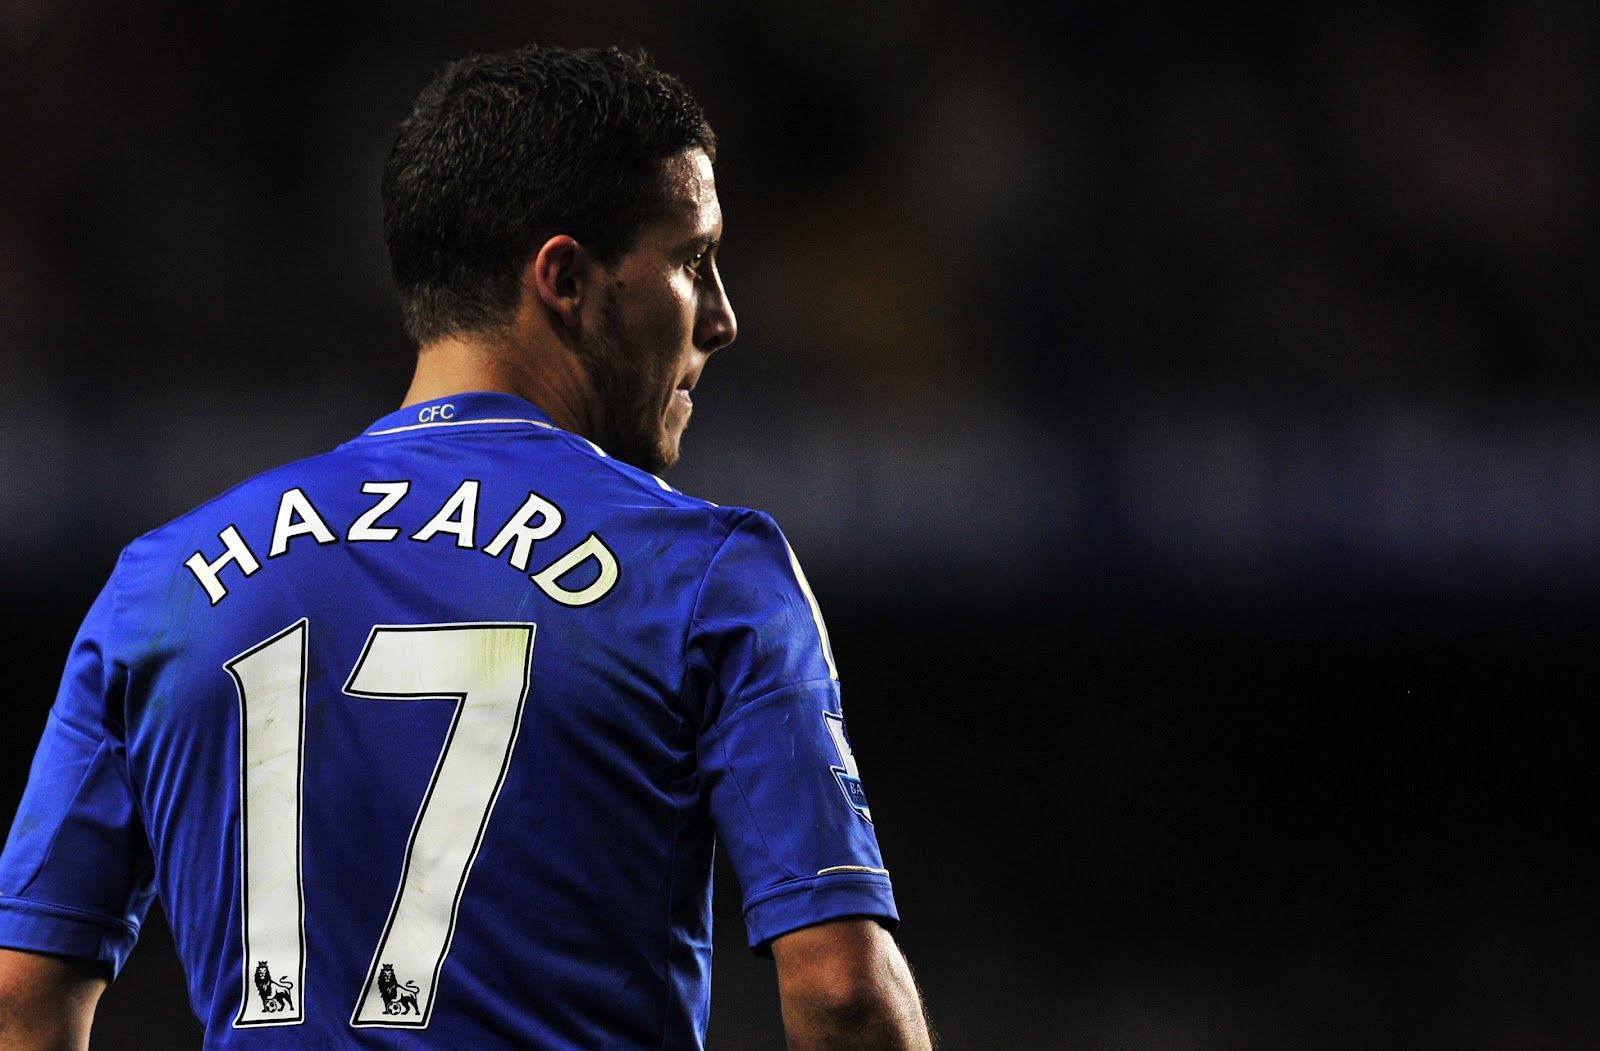 hazard, chuyển nhượng, chuyển nhượng ngày 12/6, chuyển nhượng real, số áo Hazard, vòng loại euro 2020